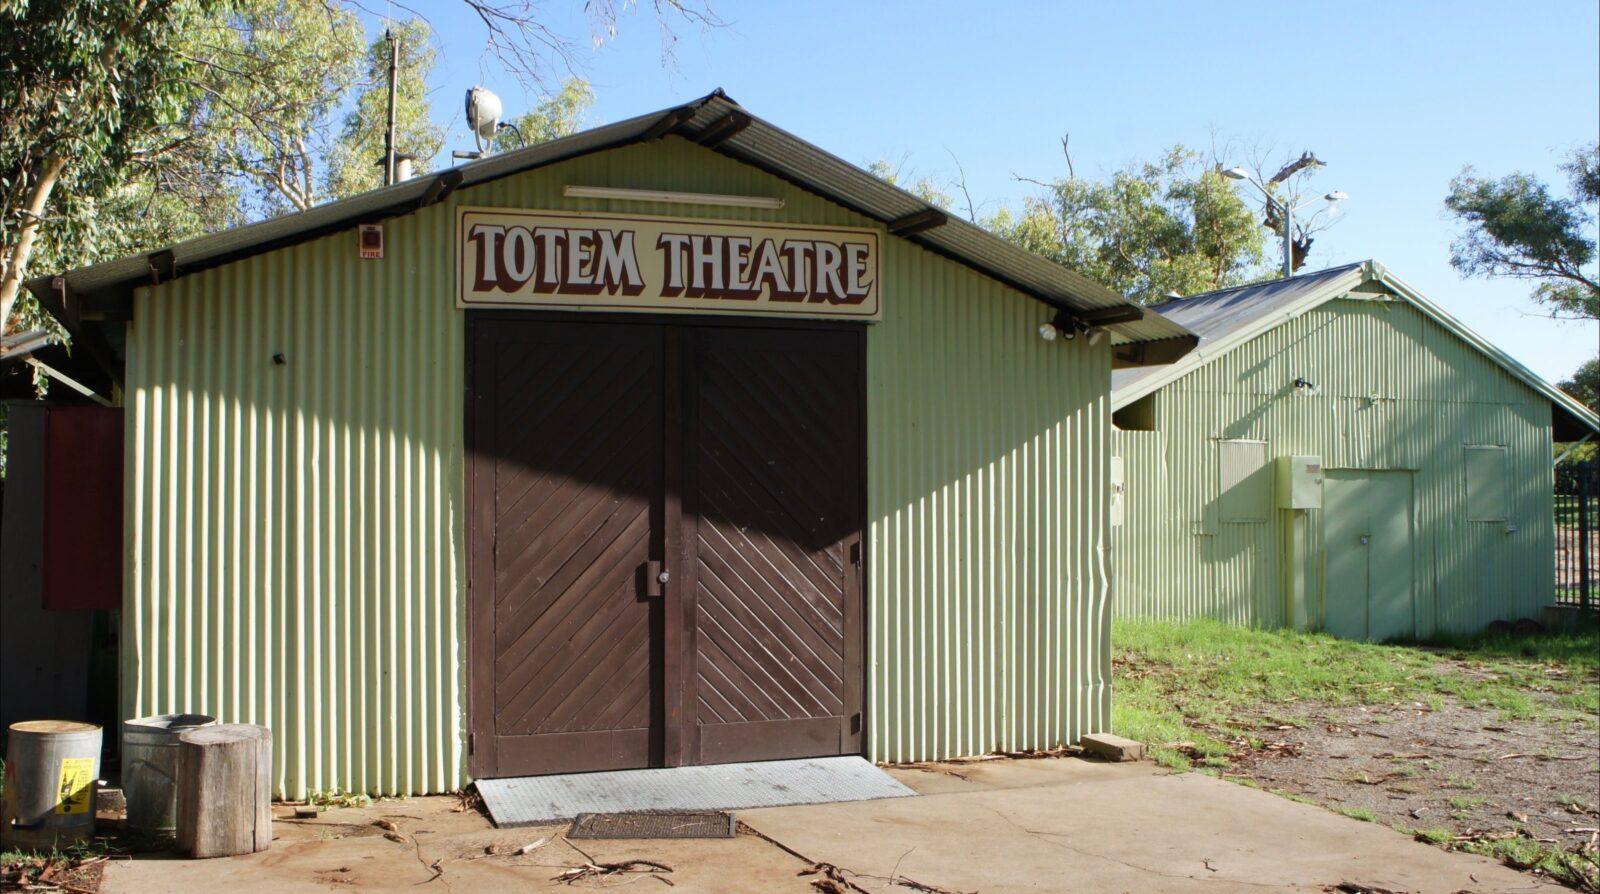 Theatre facade